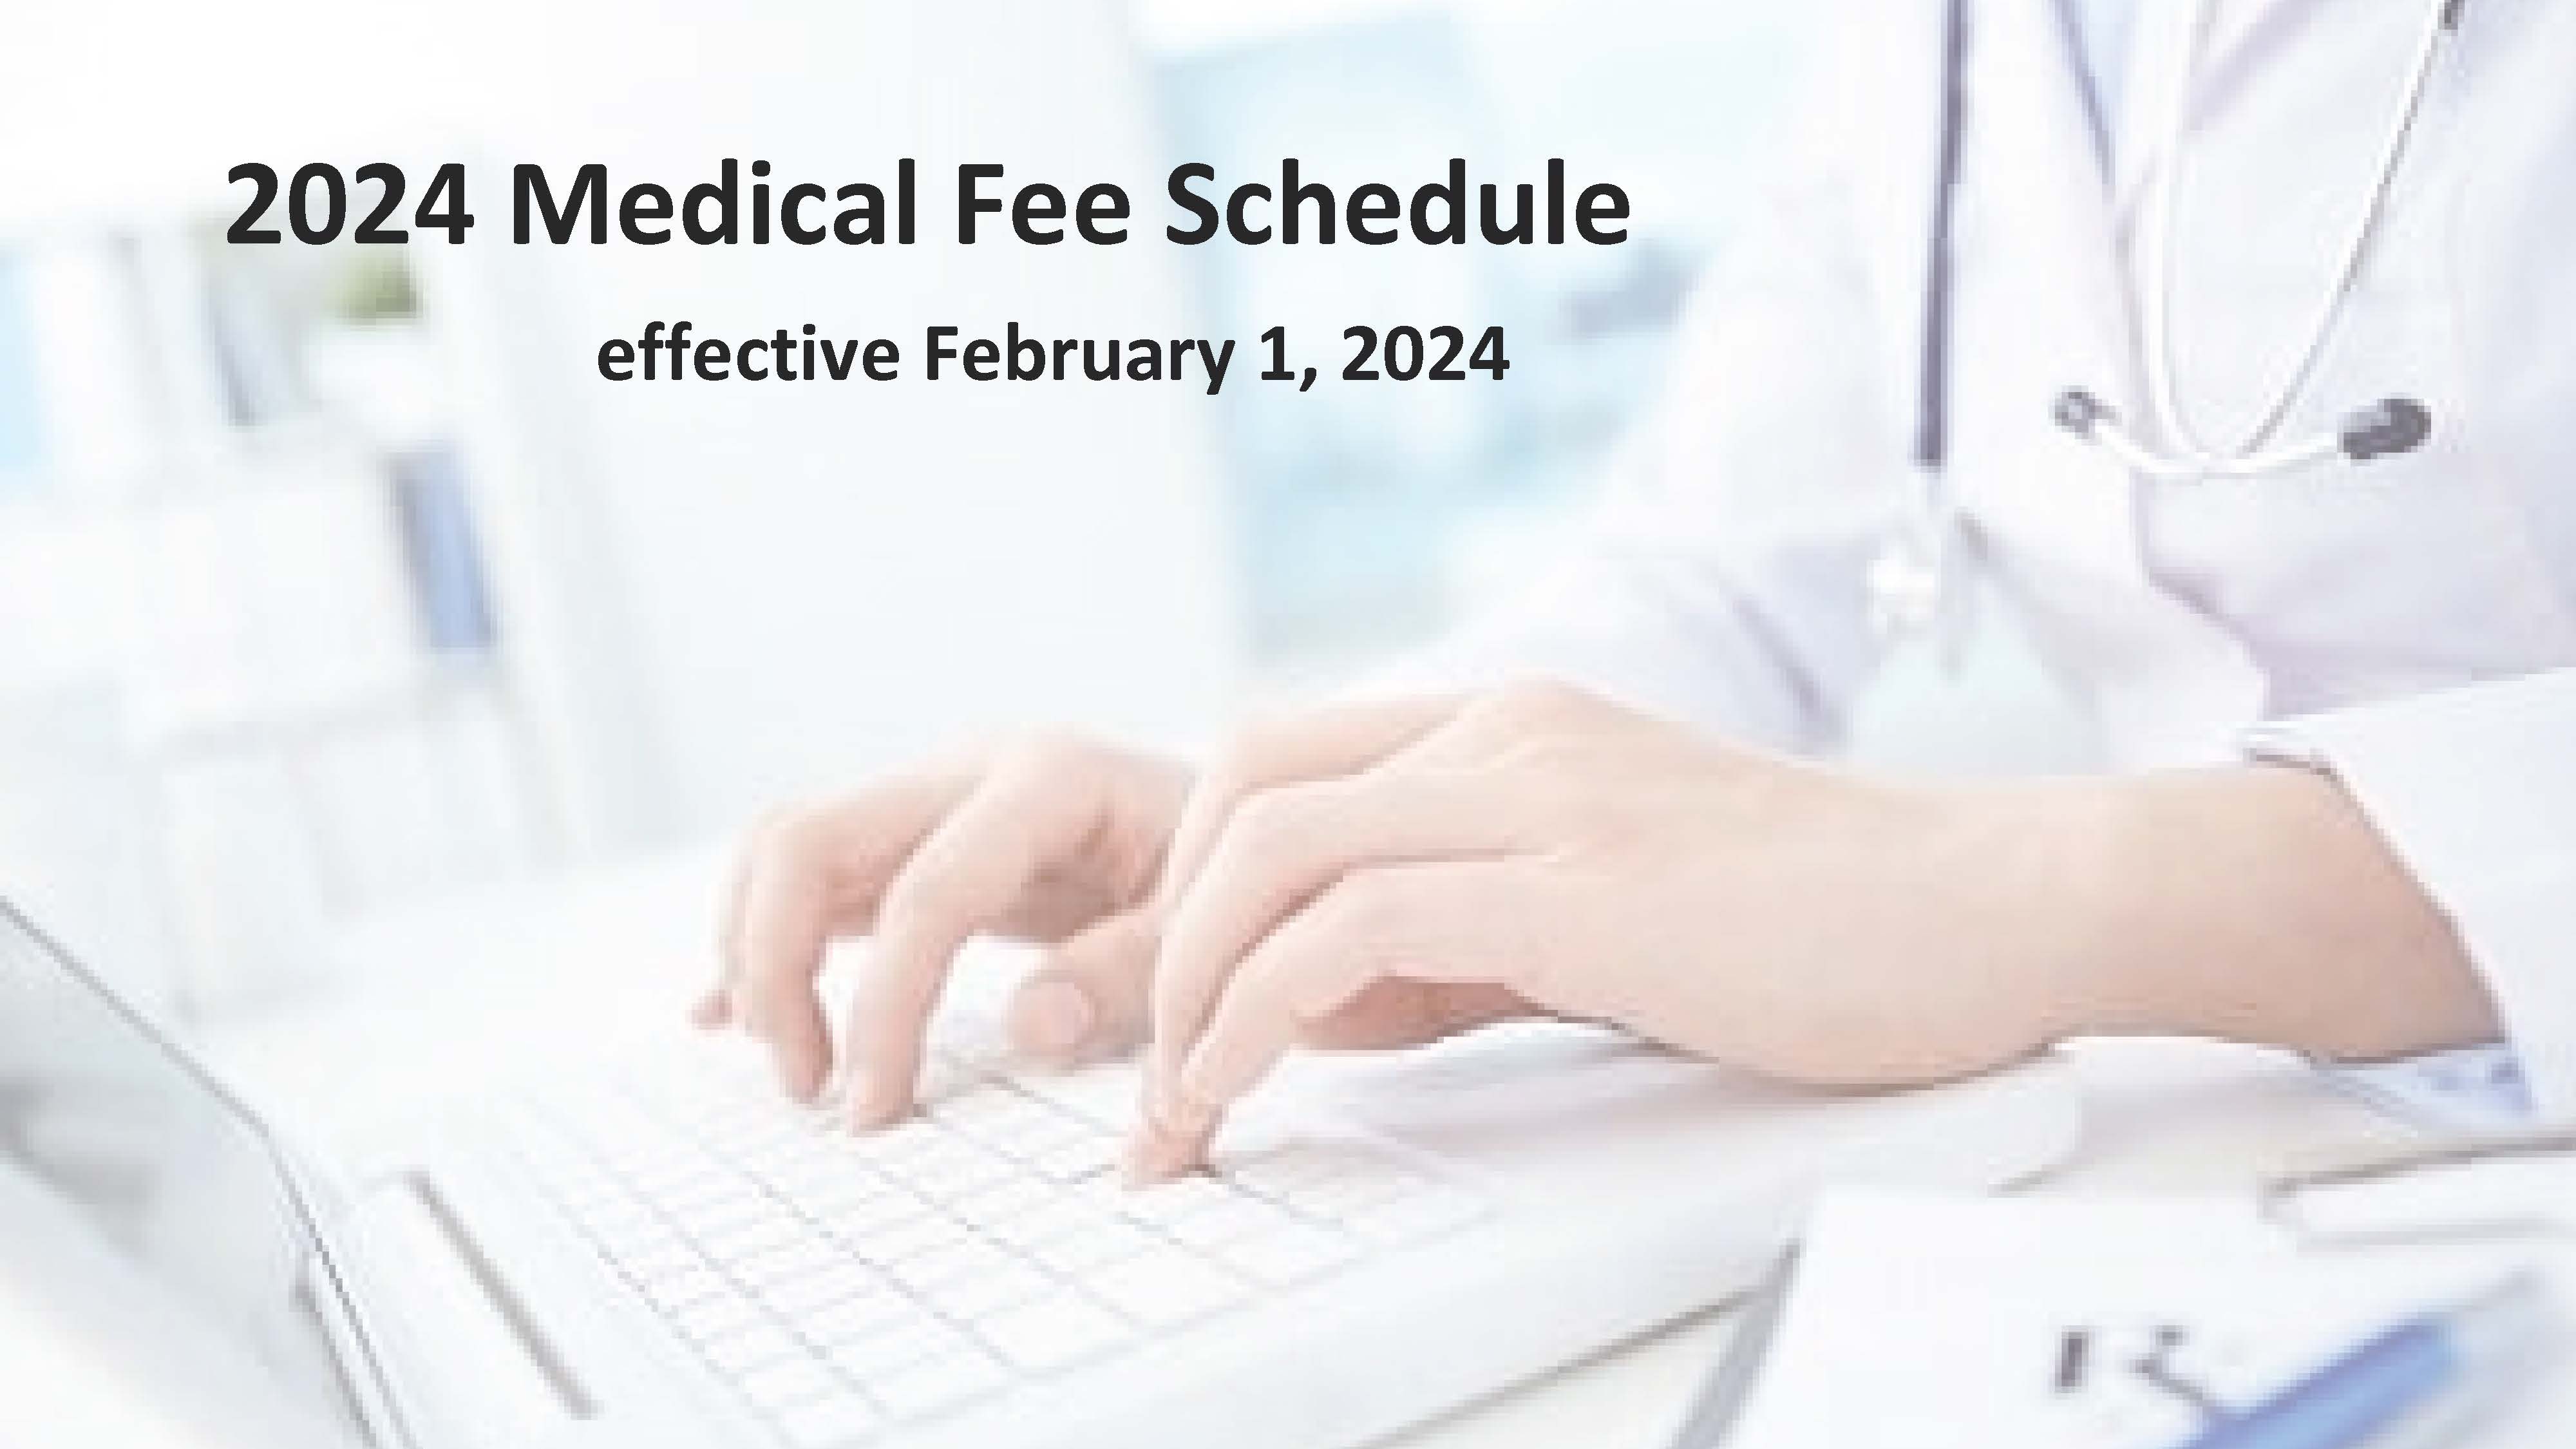 Nevada Medical Fee Schedule - eff 2/1/2024